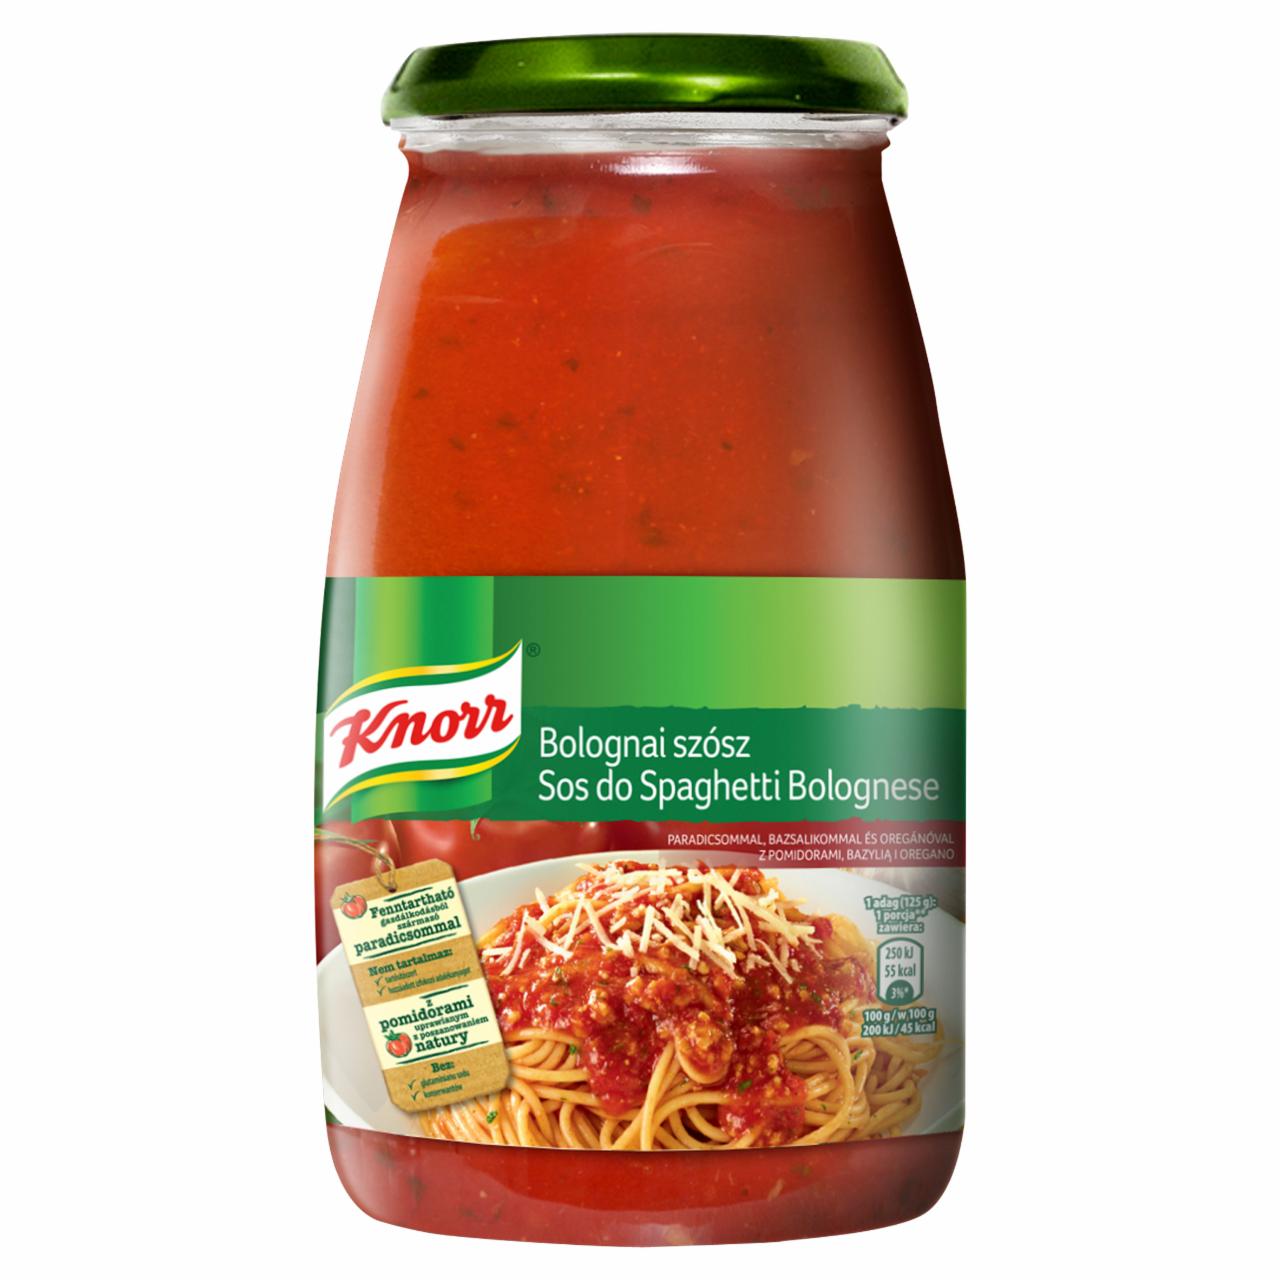 Zdjęcia - Knorr Sos do spaghetti bolognese z pomidorami bazylią i oregano 500 g